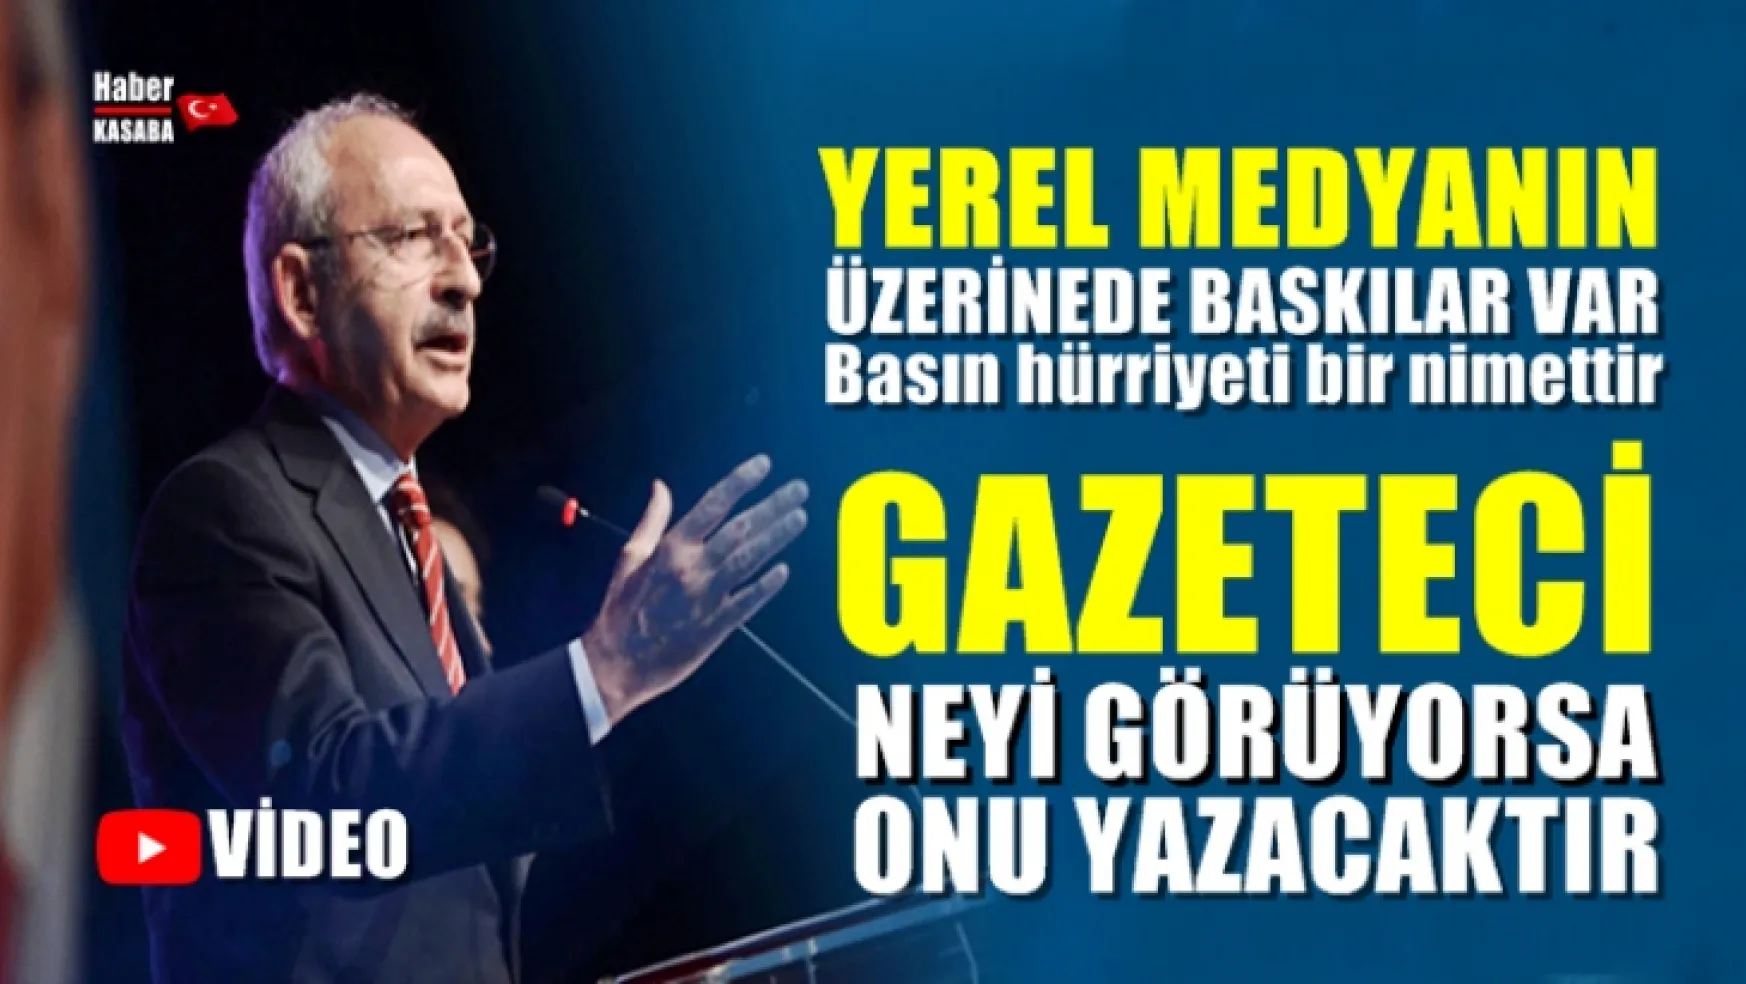 Kılıçdaroğlu,'Gazeteci neyi görüyorsa onu yazacaktır